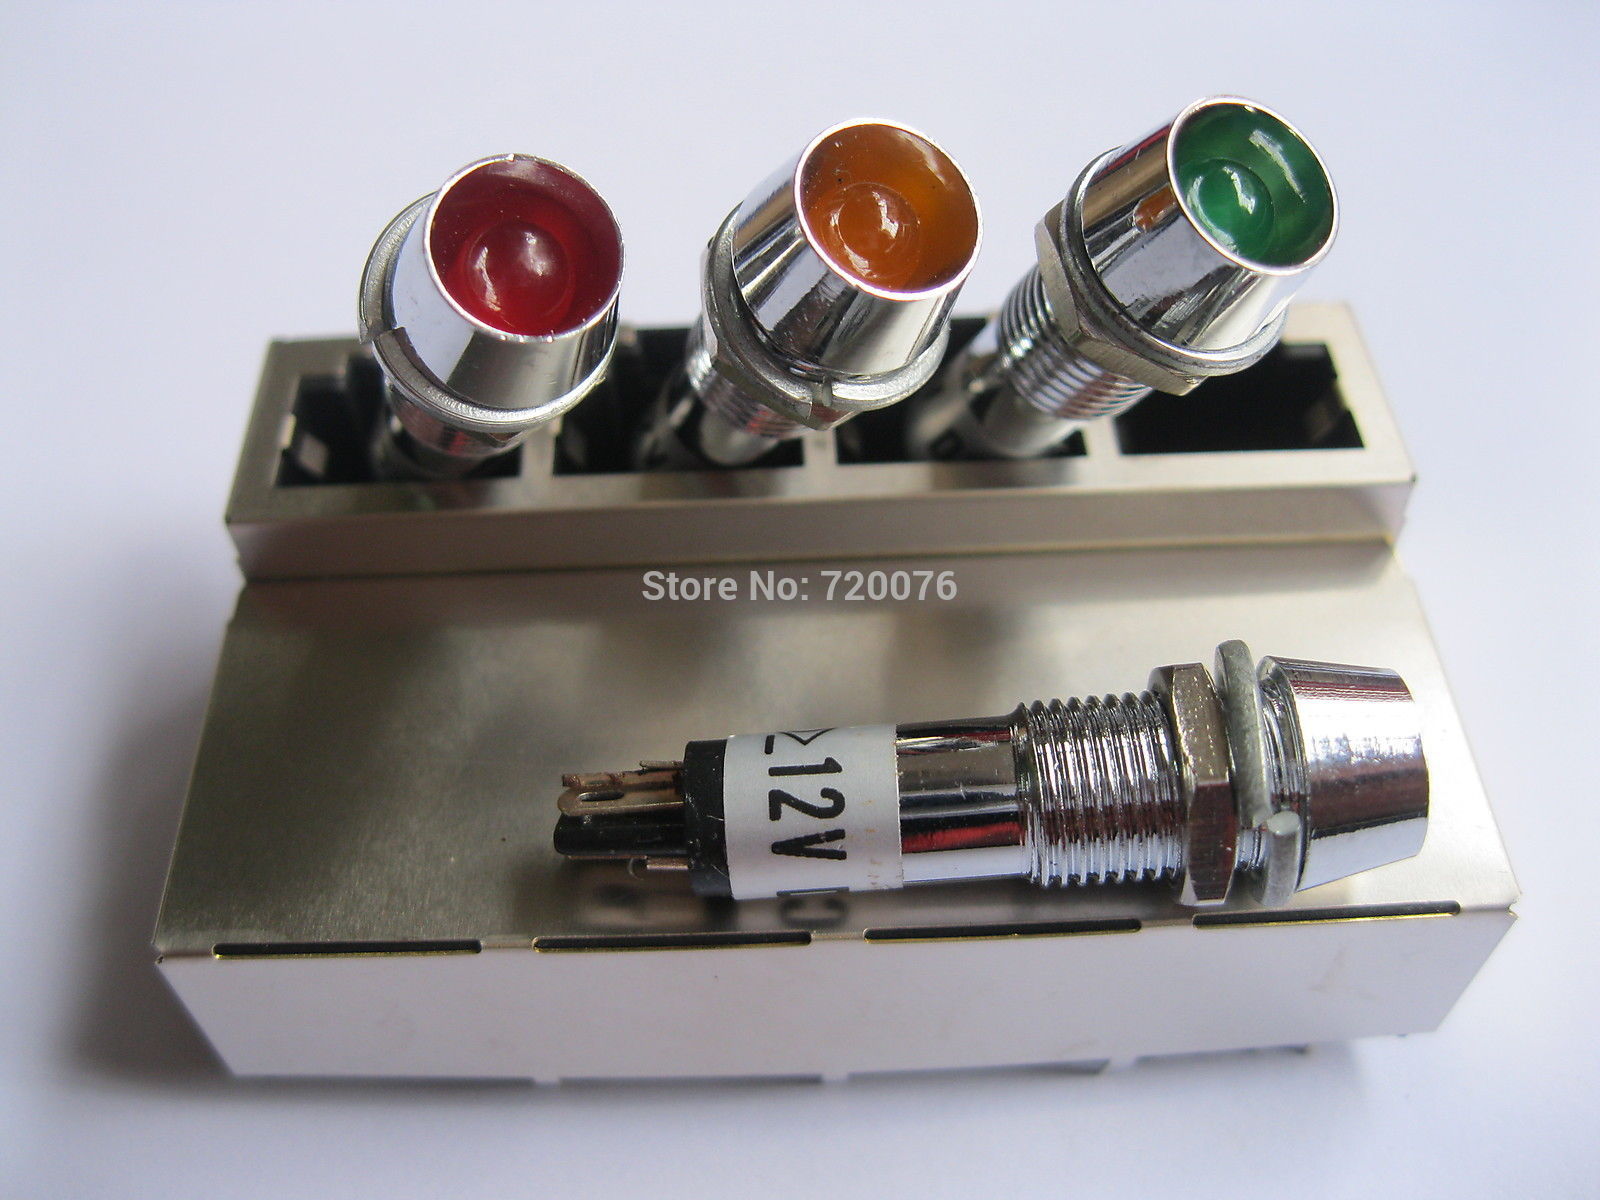 10 stks LED Indicator Signaal licht Rood/Geel/Groen Kleur DC12V voor schakelaar etc